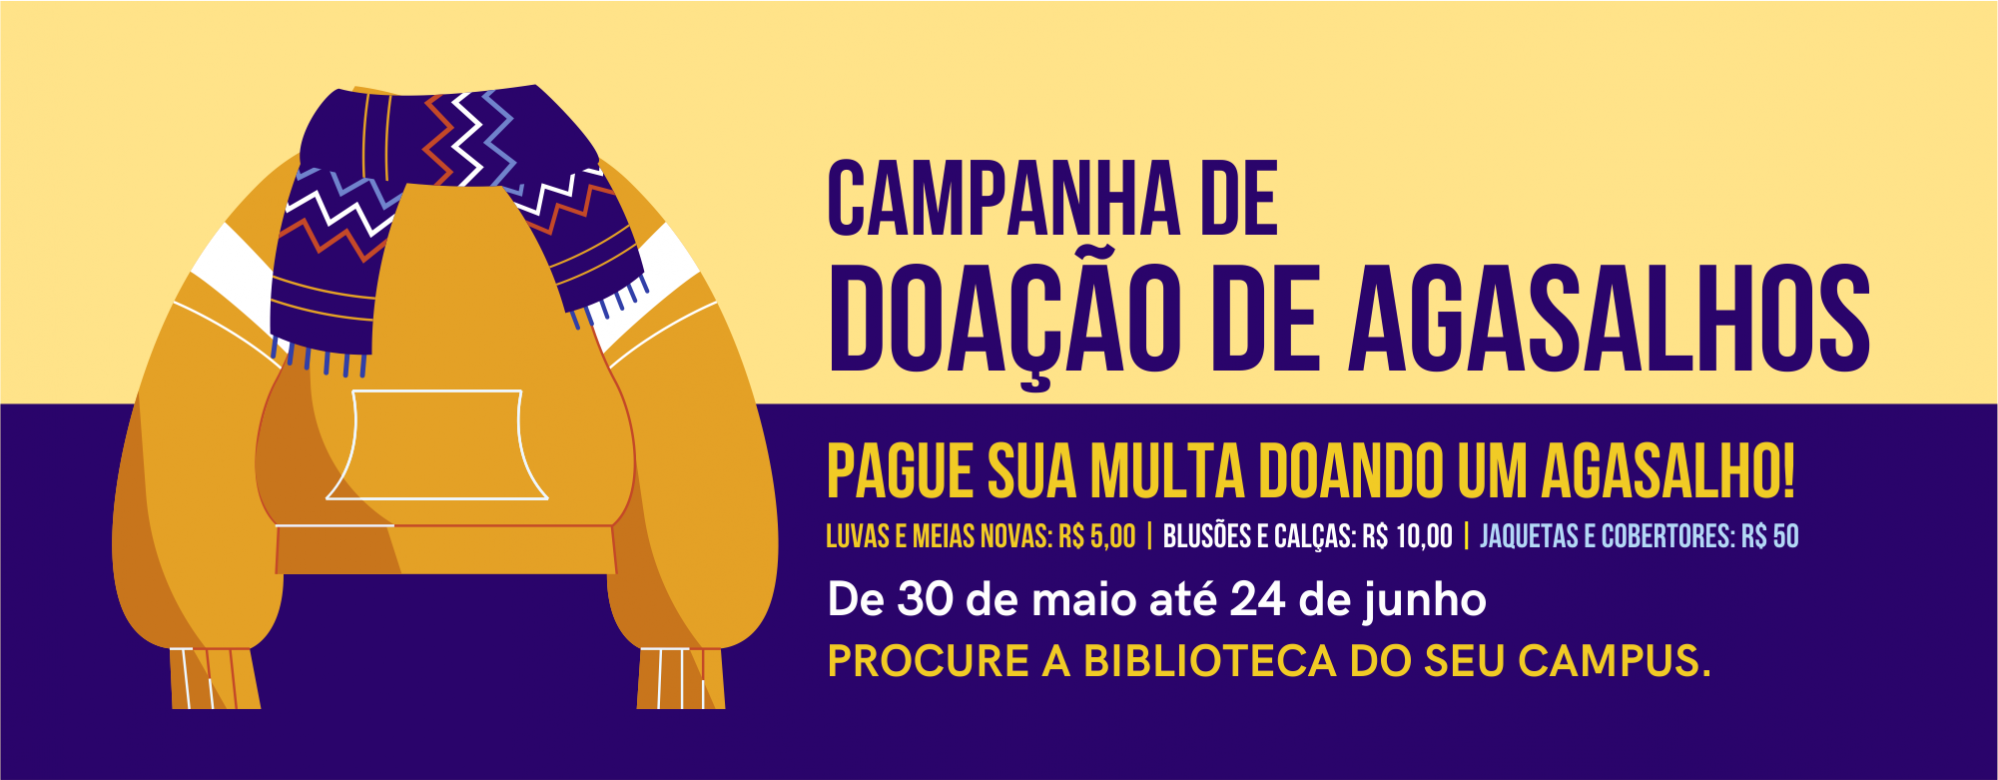 Banner com imagem de blusão e cachecol contendo texto referente à campanha de doação de agasalhos das bibliotecas da Unipampa.